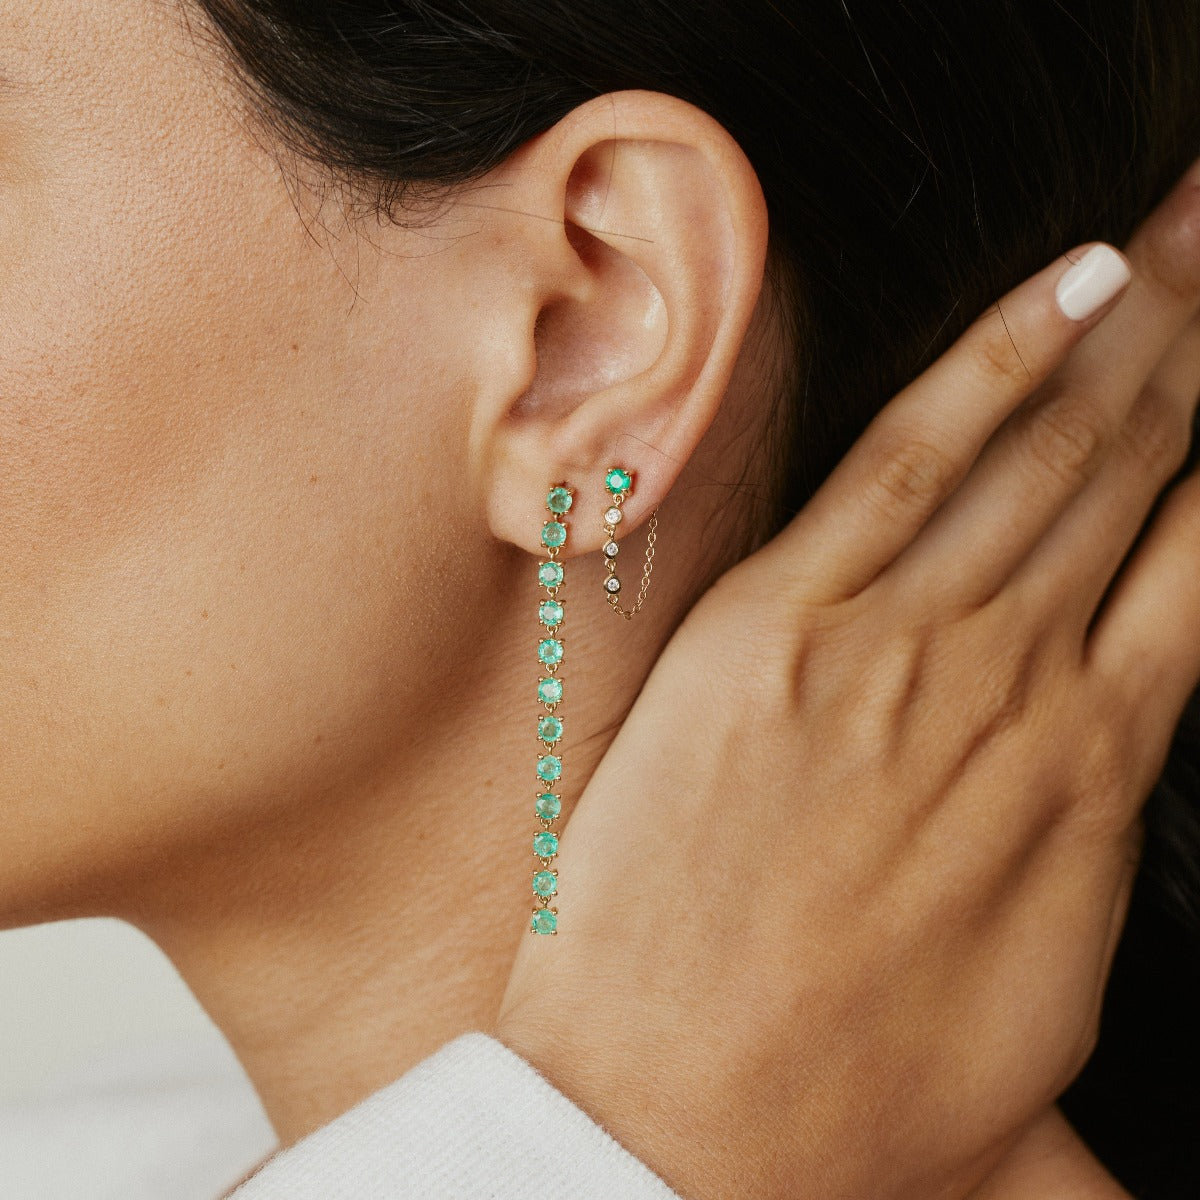 Emerald Link Earrings